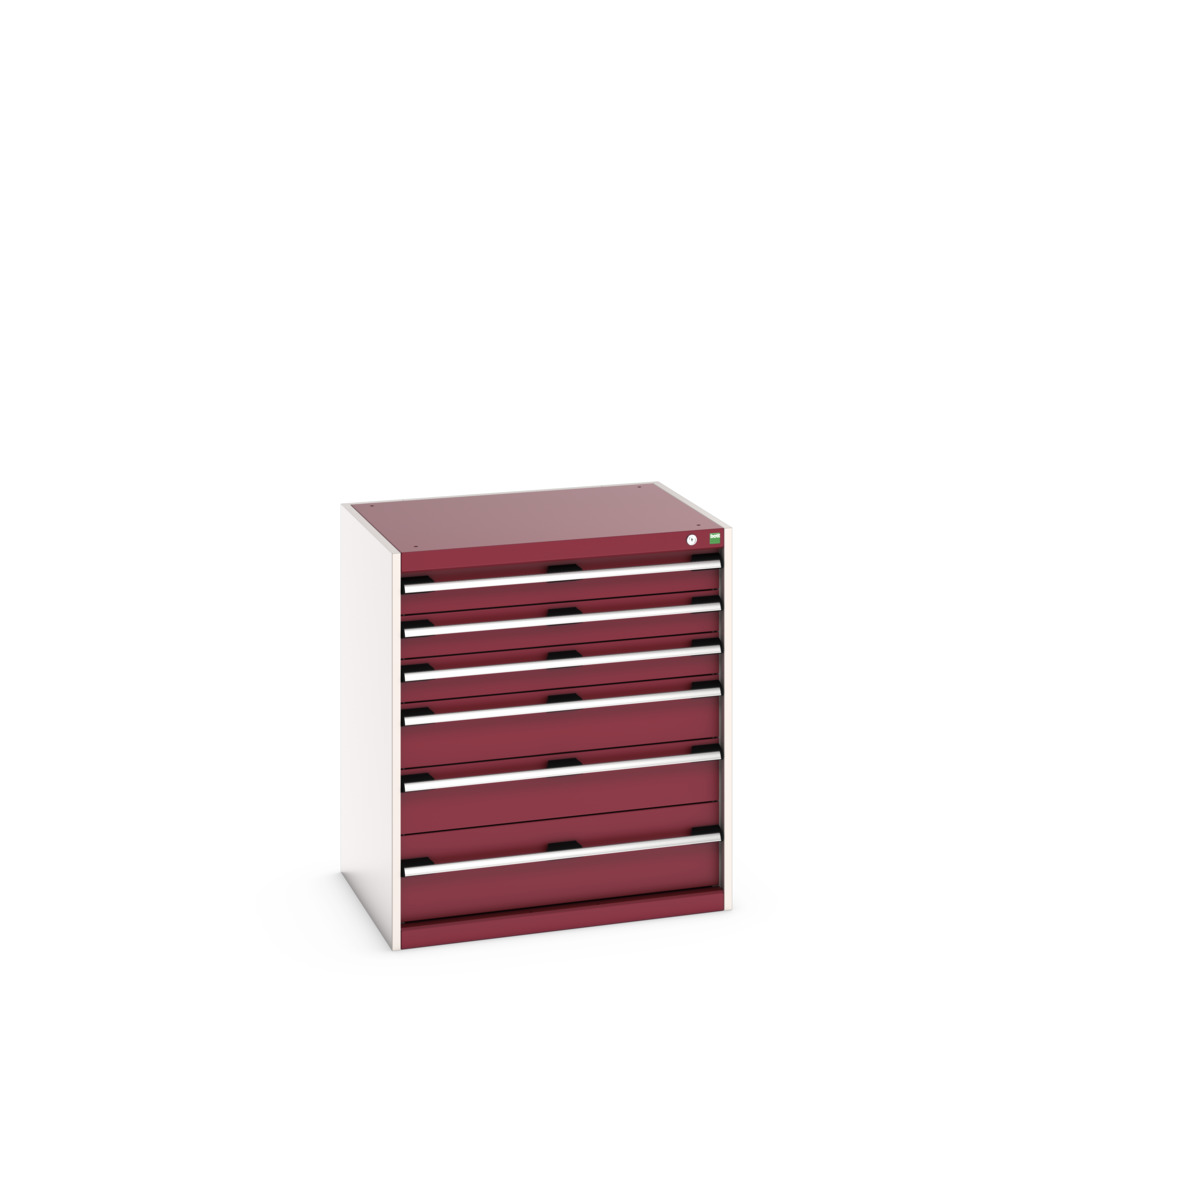 40020147.24V - cubio drawer cabinet